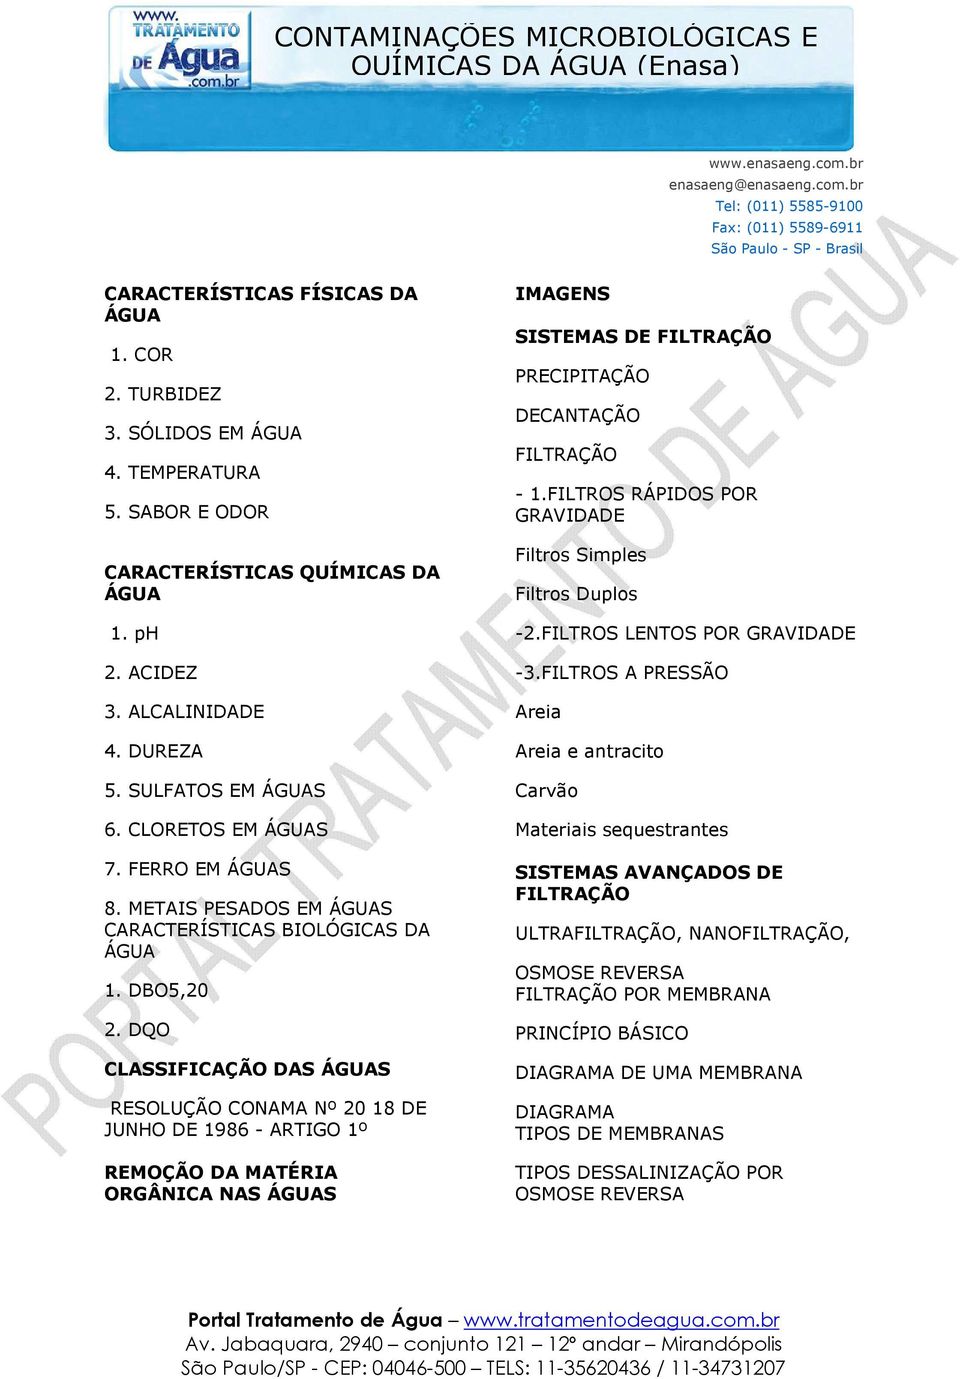 METAIS PESADOS EM ÁGUAS CARACTERÍSTICAS BIOLÓGICAS DA ÁGUA 1. DBO5,20 2.